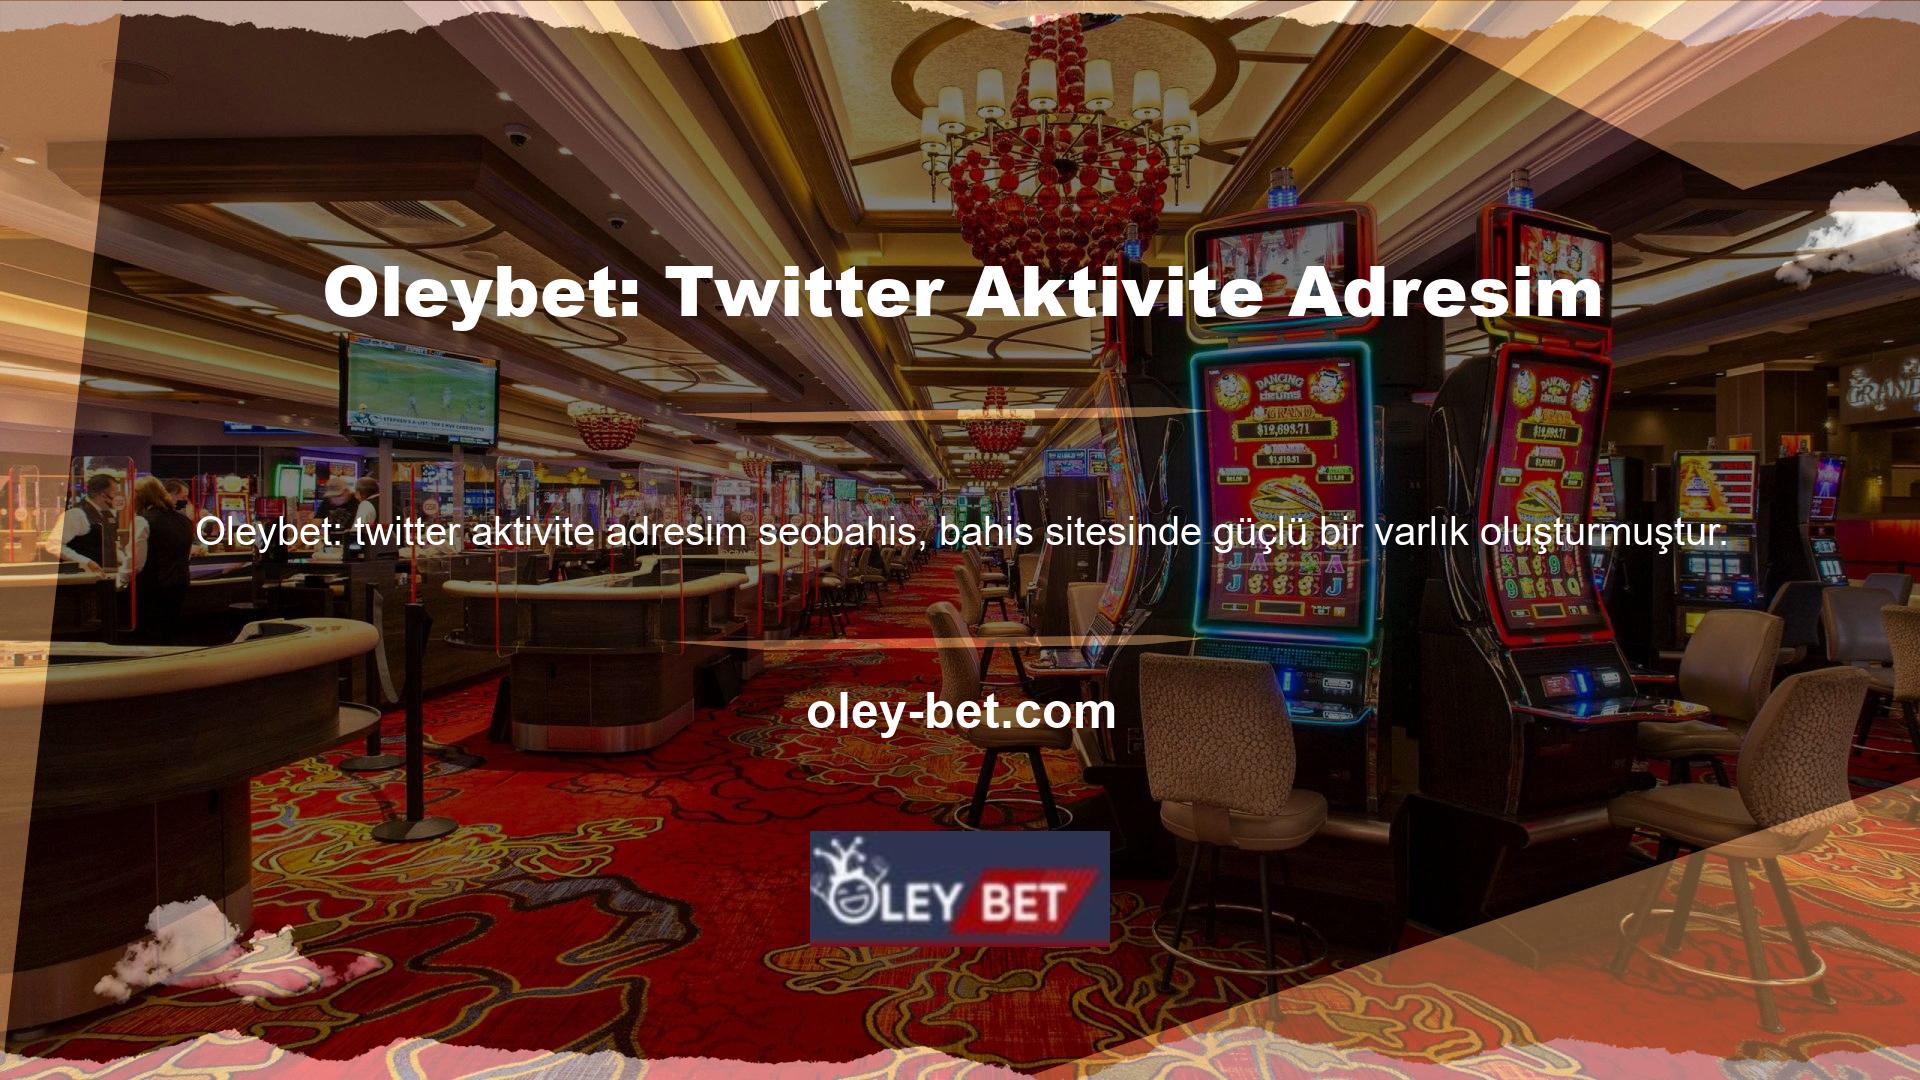 Neden? @Oleybet giriş bağlantısının aktif adresi Twitter tarafından belirlendi